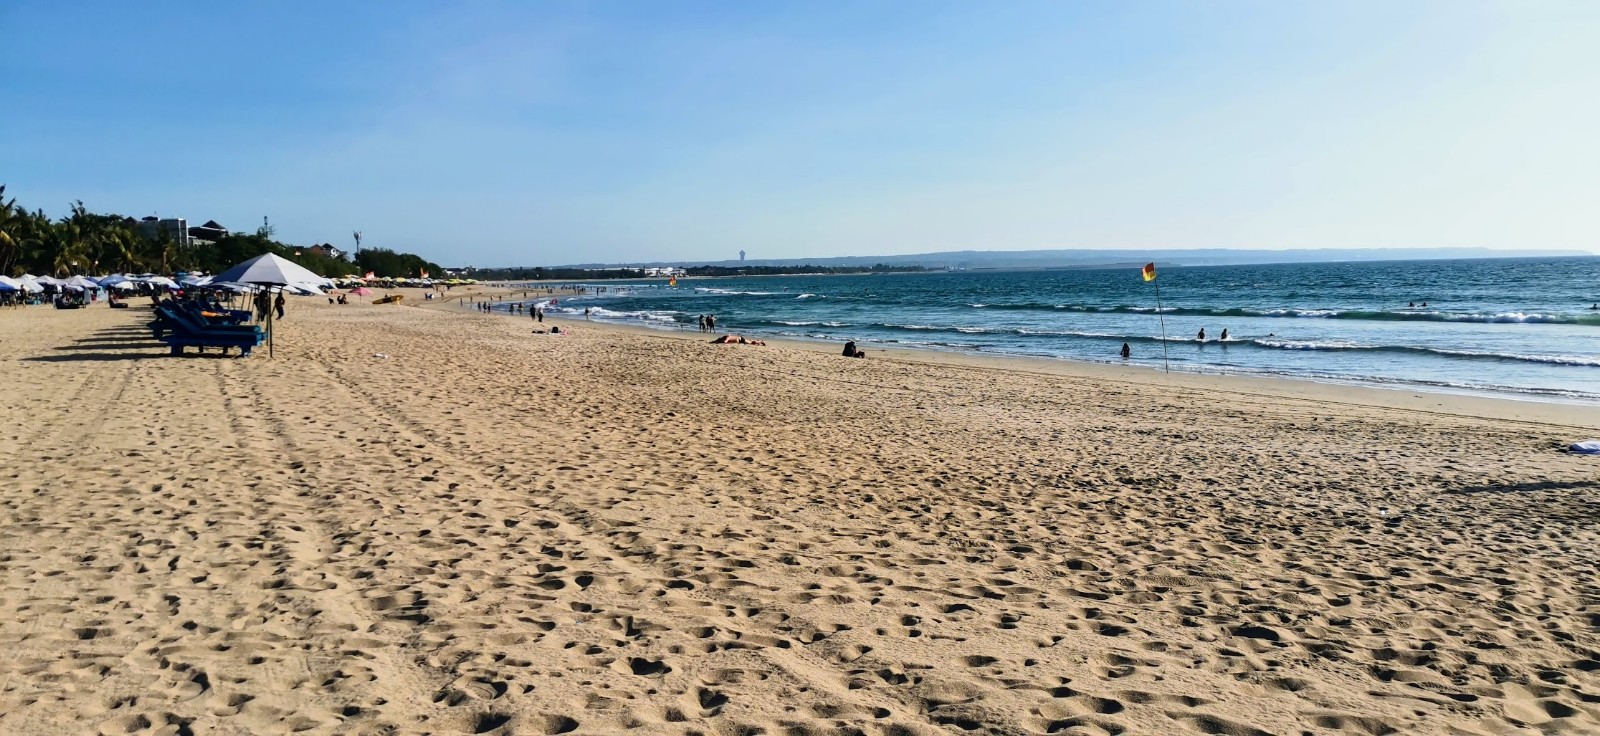 Foto di Spiaggia Double Six con una superficie del sabbia fine e luminosa